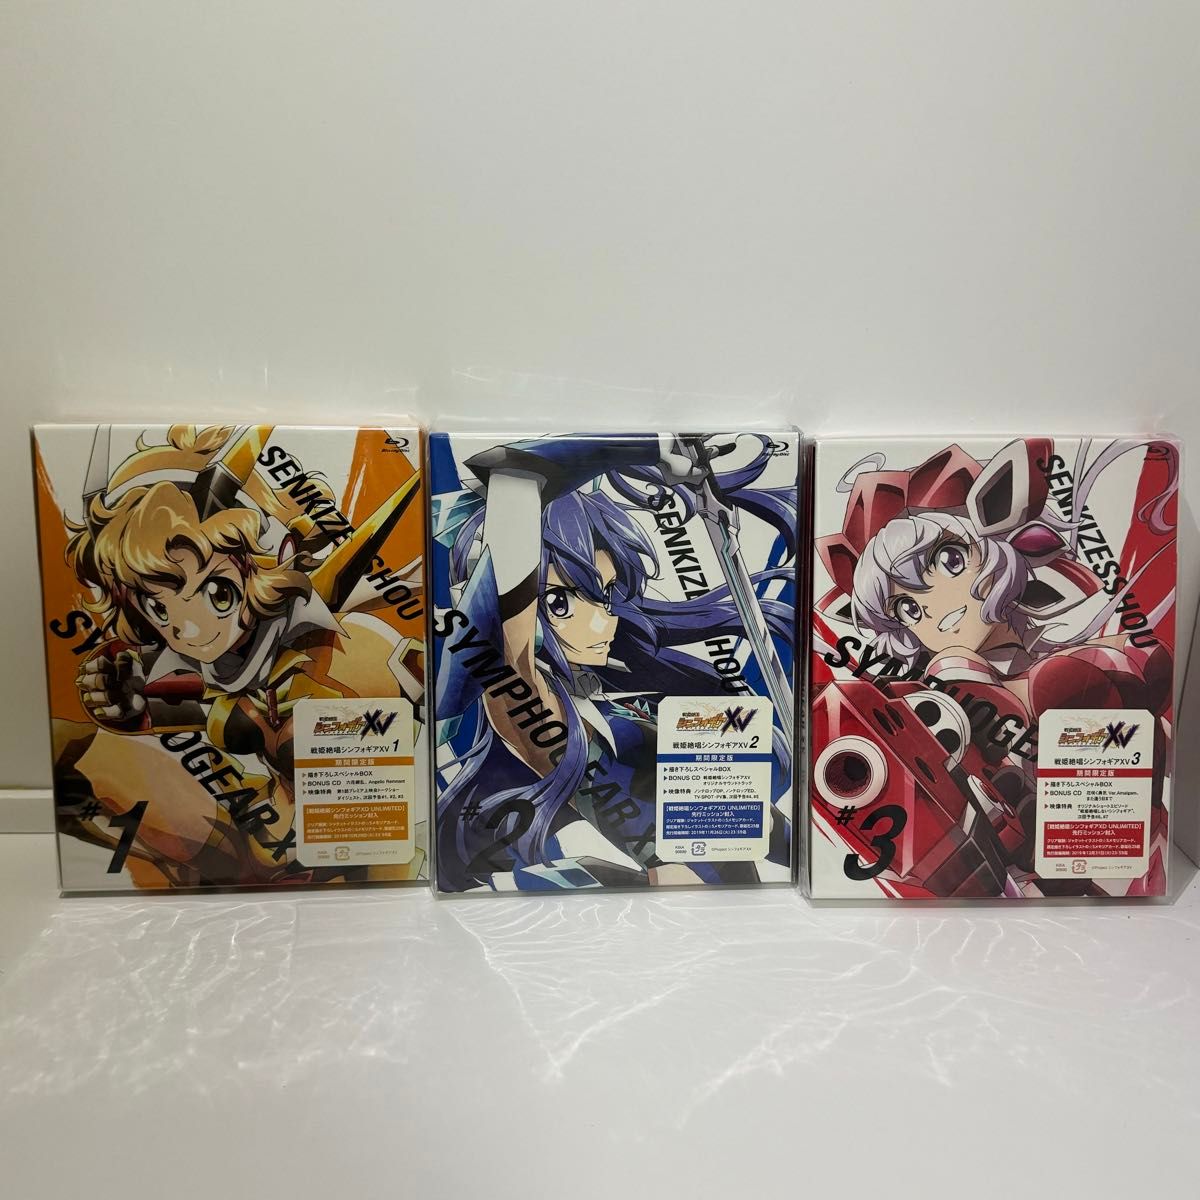 Blu-ray 戦姫絶唱シンフォギアXV 期間限定版 全6巻セット BOX付き アニメ